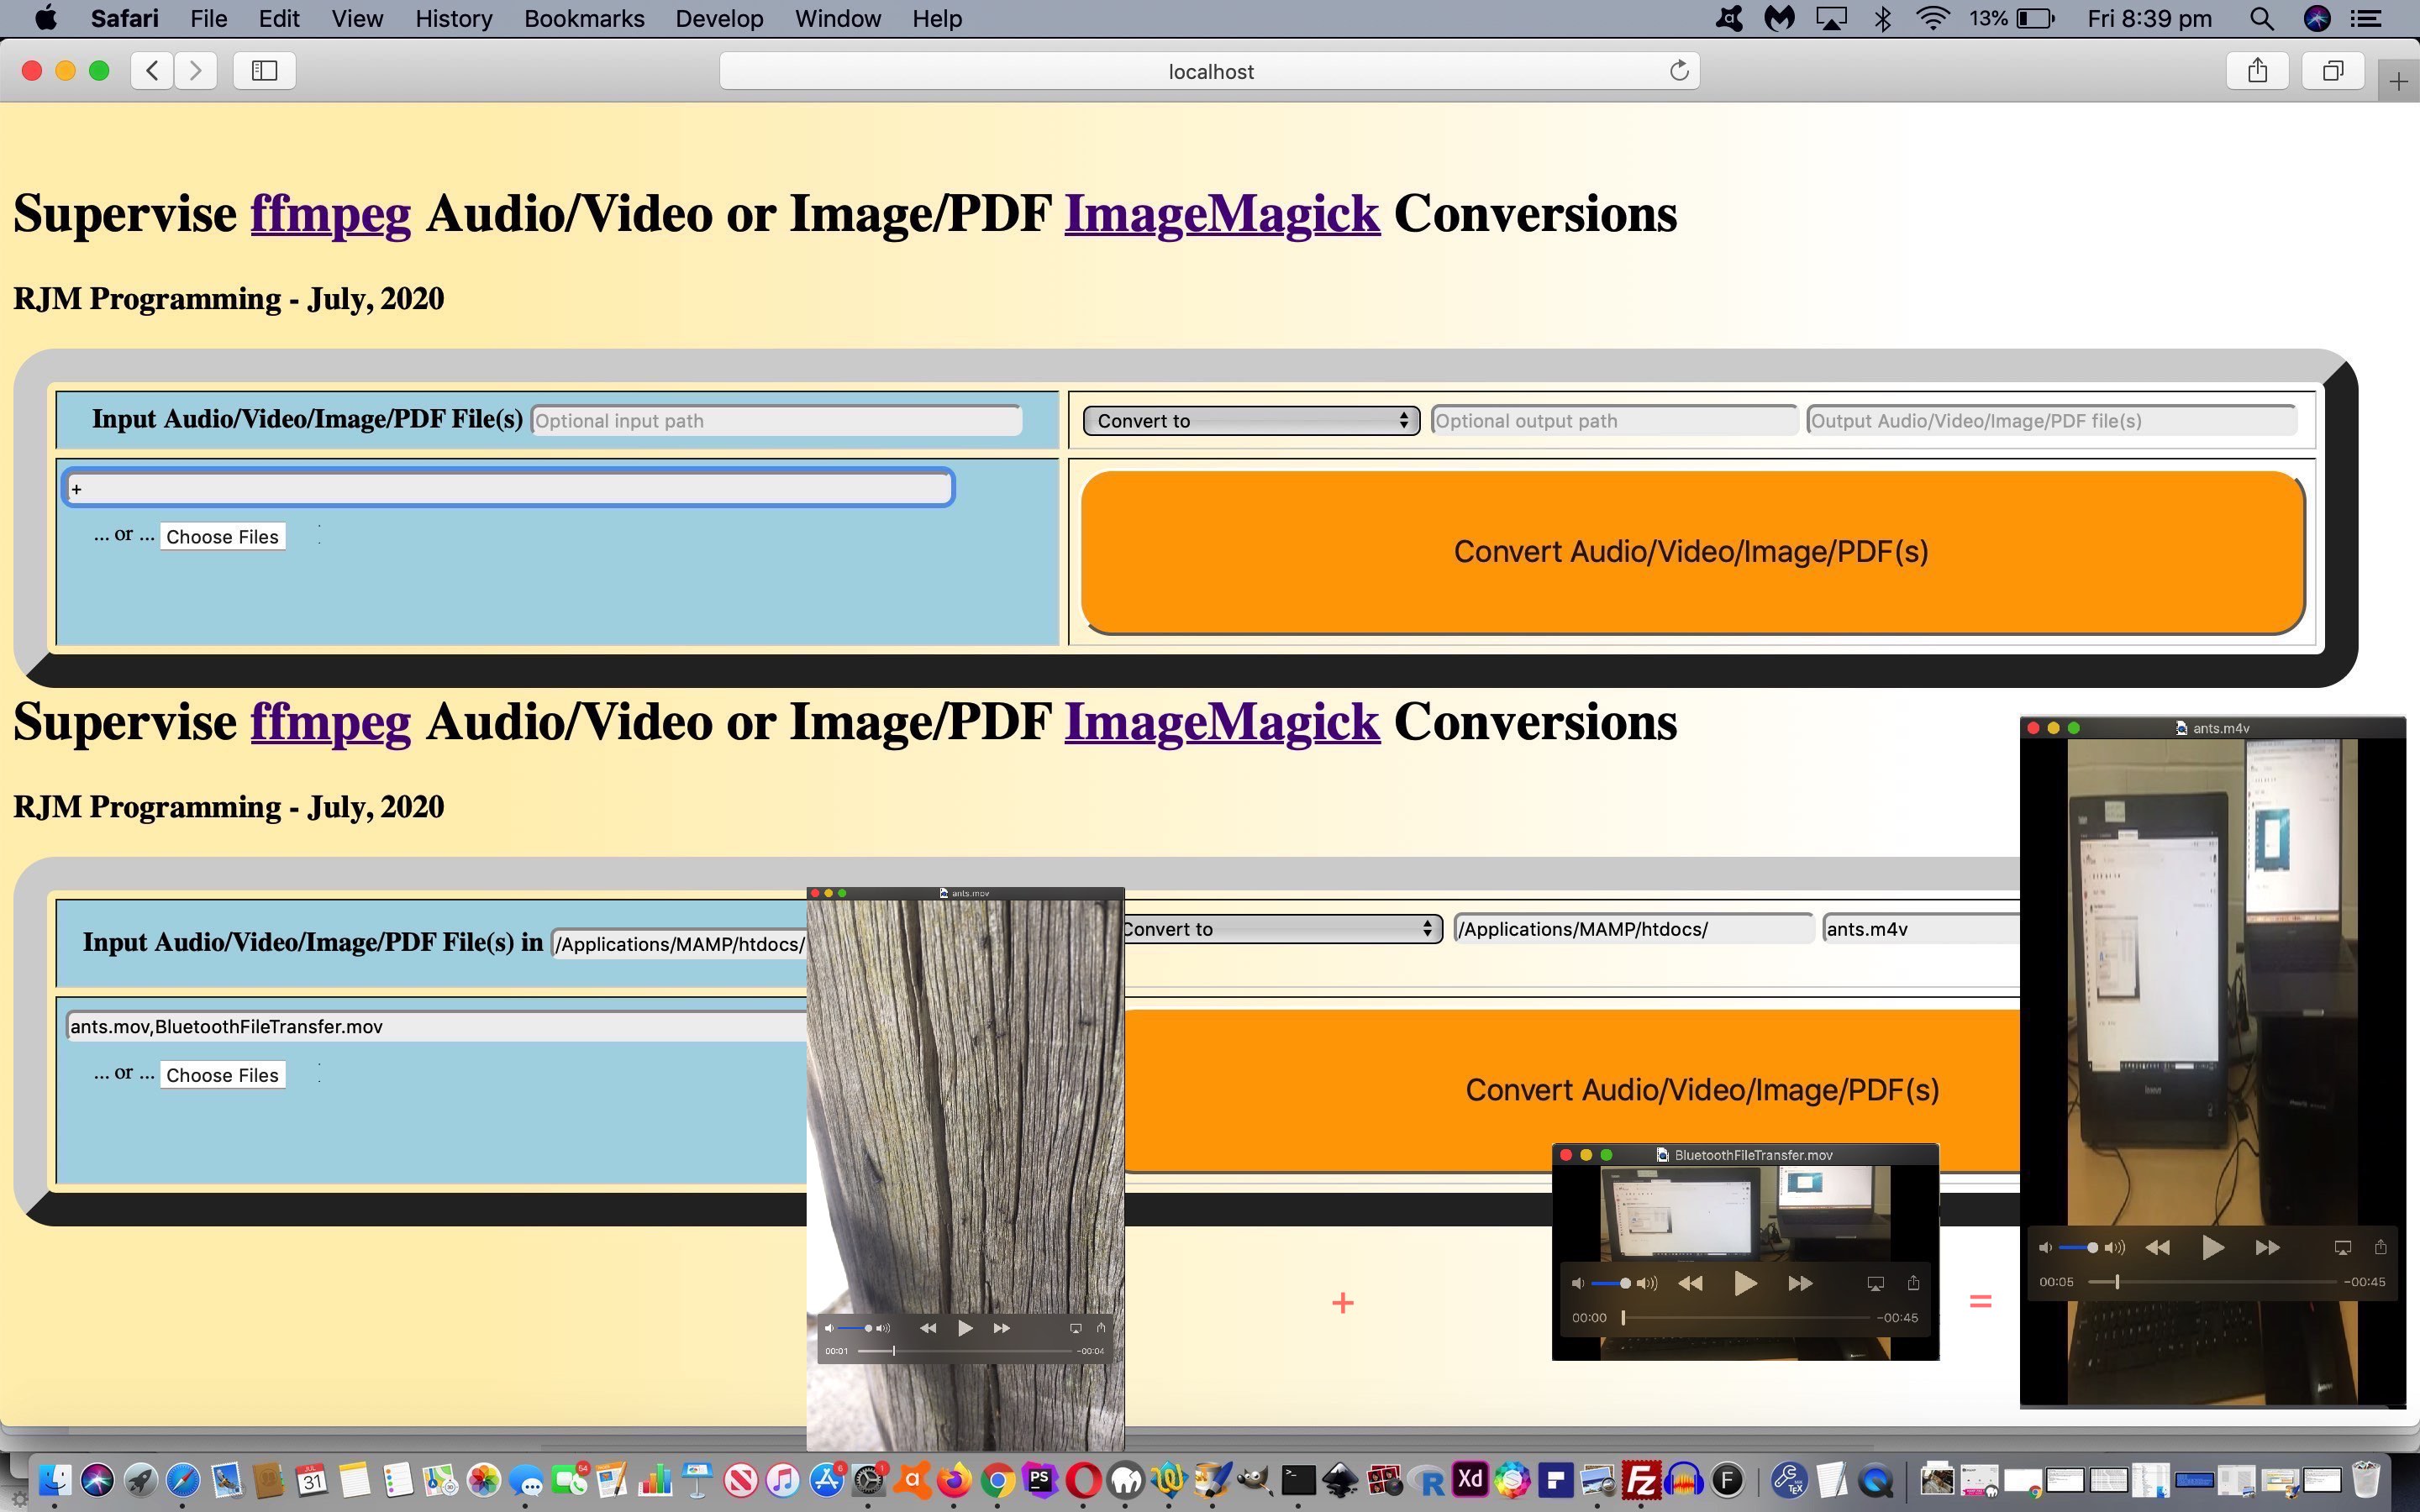 Image/PDF and Audio/Video Supervised Concatenate Tutorial